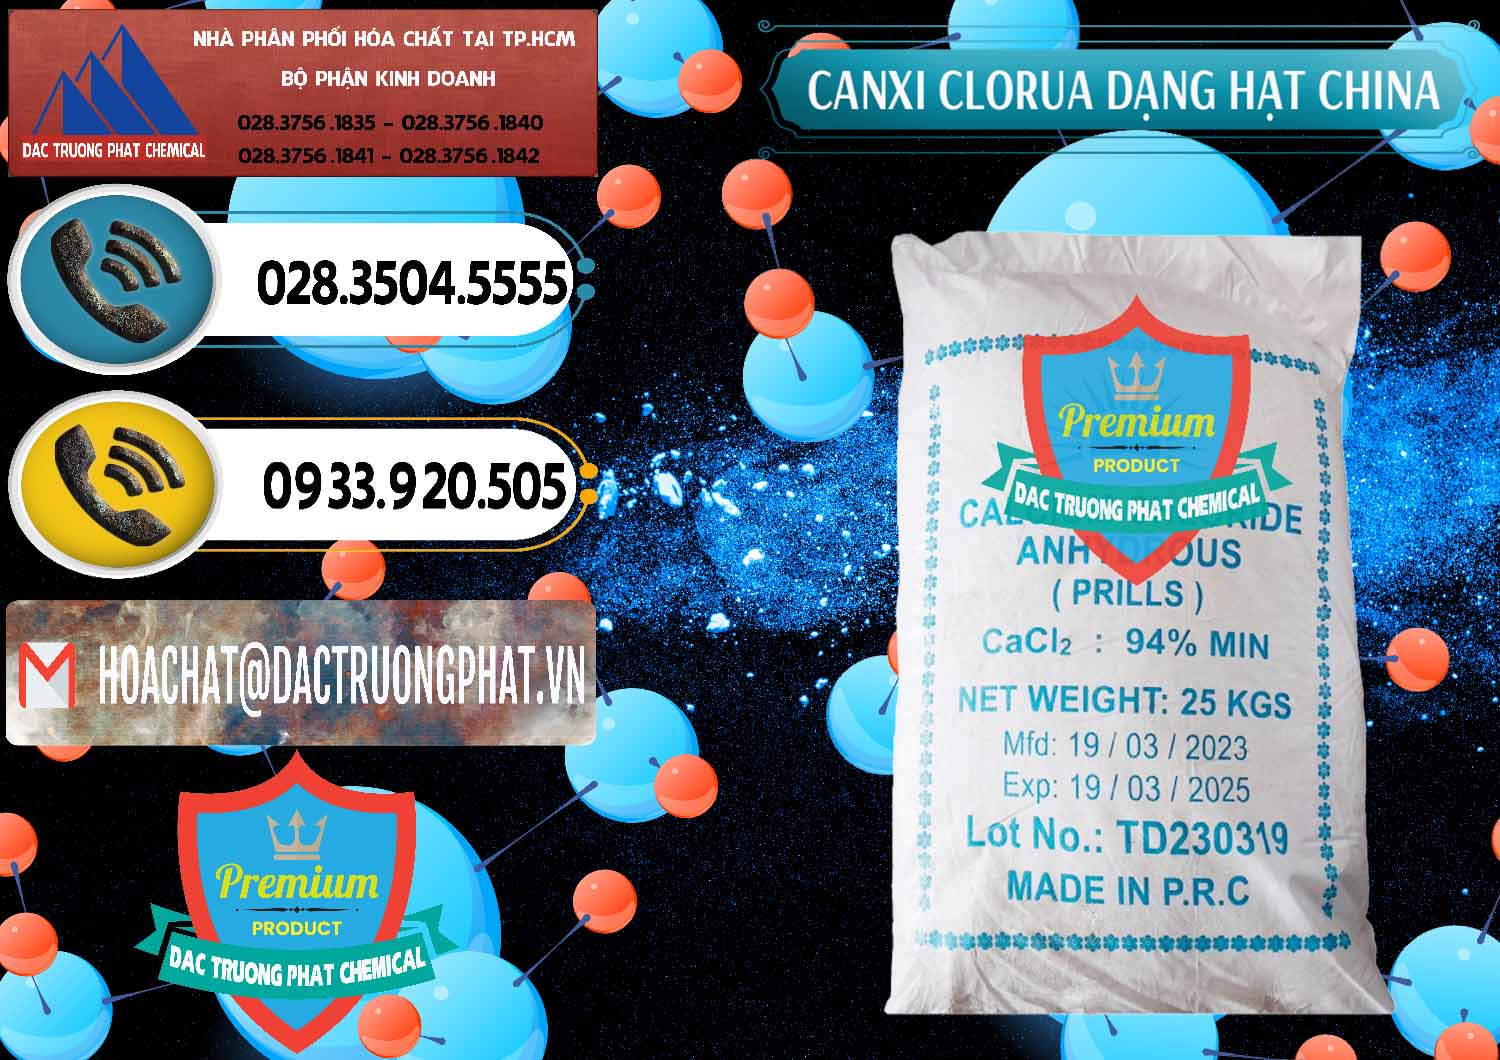 Nơi cung cấp & bán CaCl2 – Canxi Clorua 94% Dạng Hạt Trung Quốc China - 0373 - Nơi chuyên phân phối - kinh doanh hóa chất tại TP.HCM - hoachatdetnhuom.vn